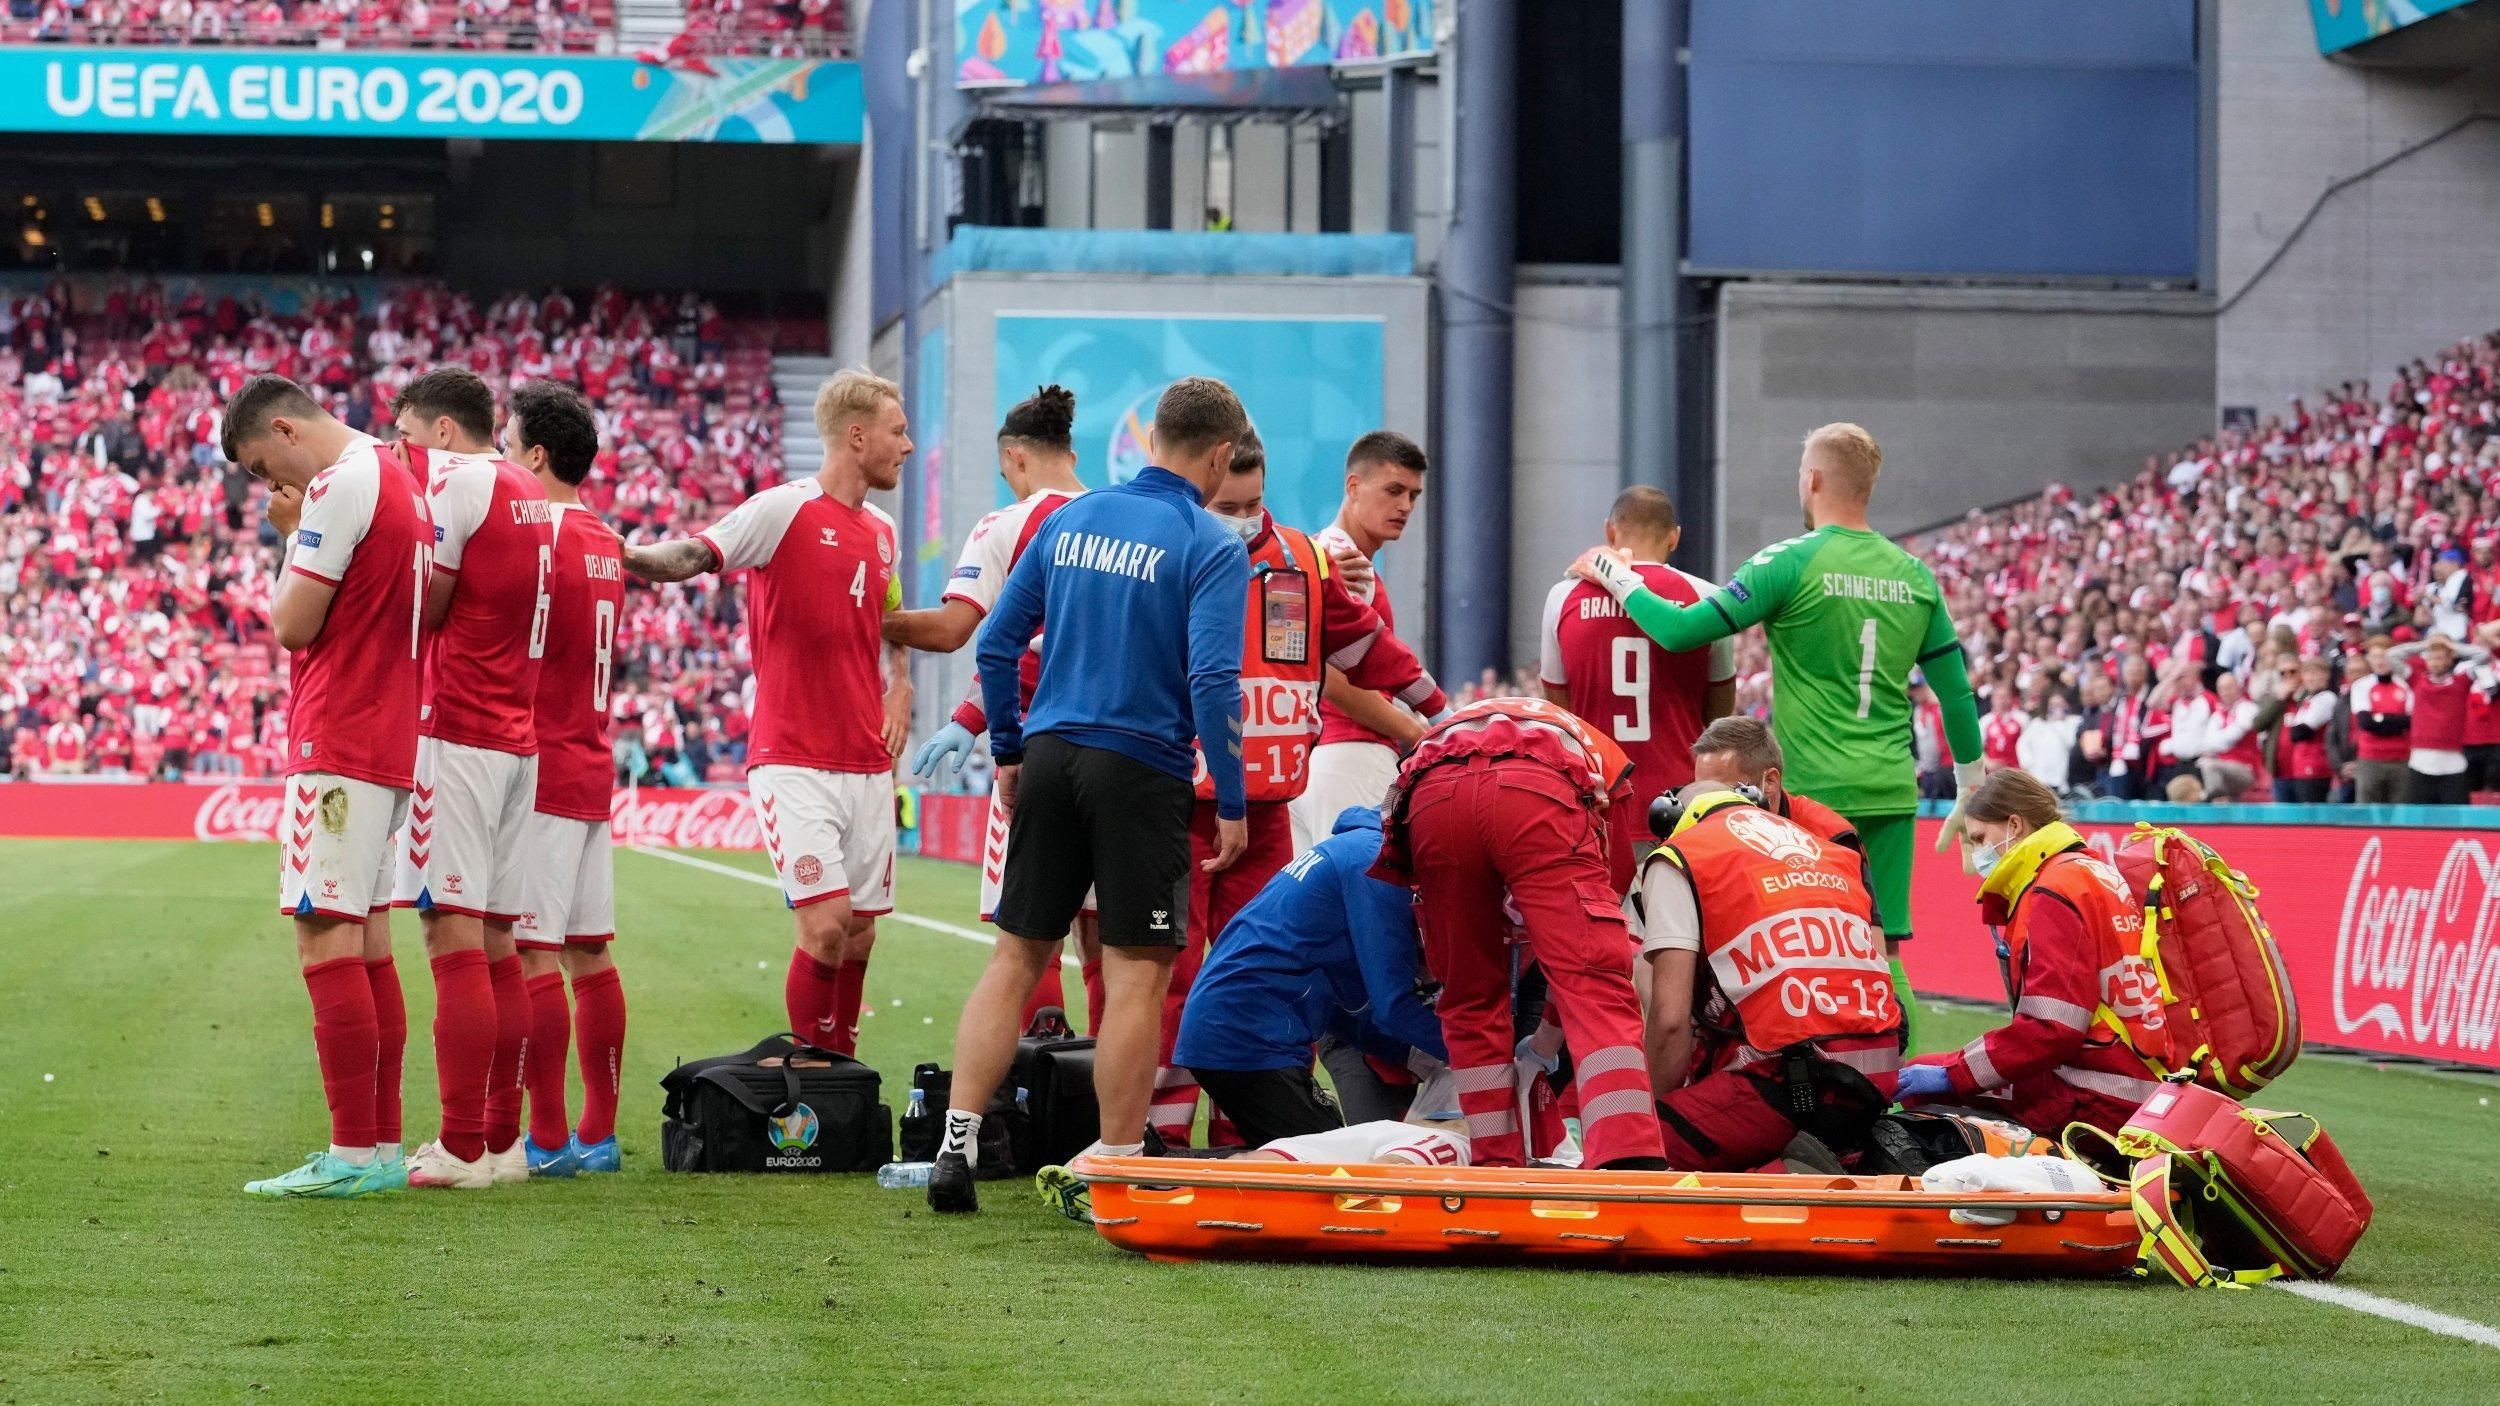 Медики, які врятували Крістіана Еріксена під час матчу Євро-2020, отримали нагороду від УЄФА - Спорт 24